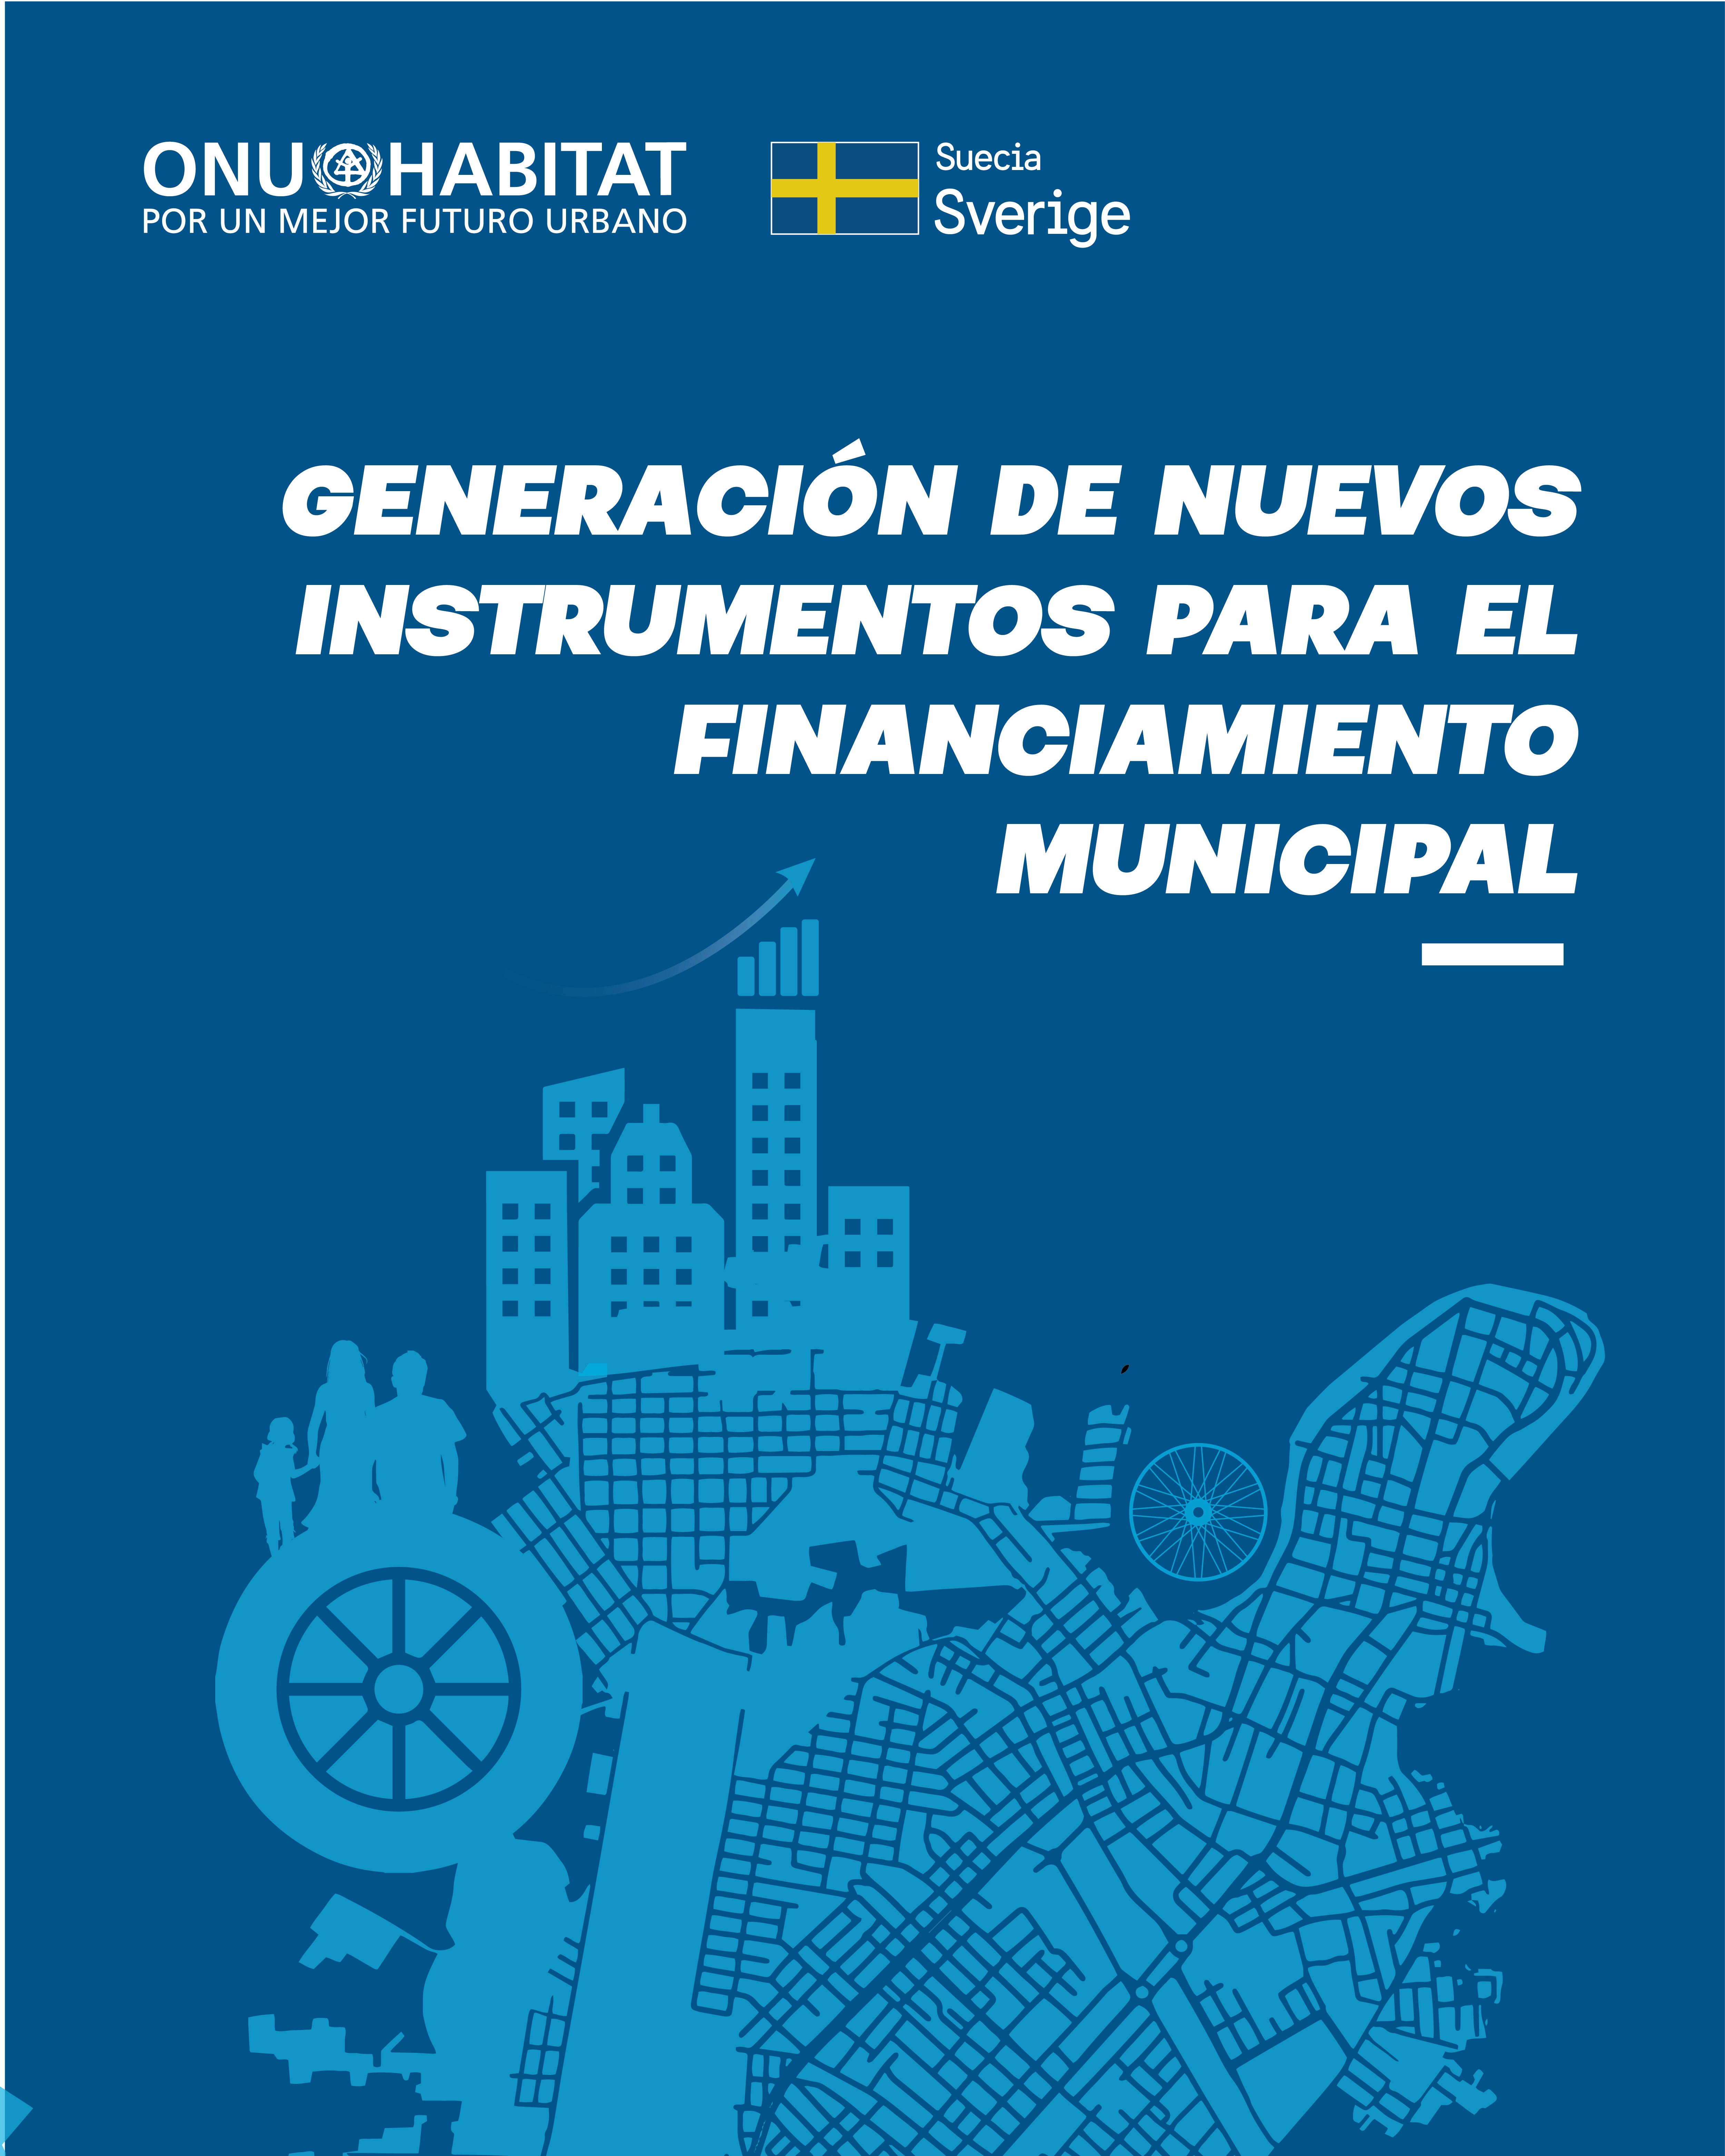 ONU-Habitat: Generación de nuevos instrumentos para el financiamiento municipal